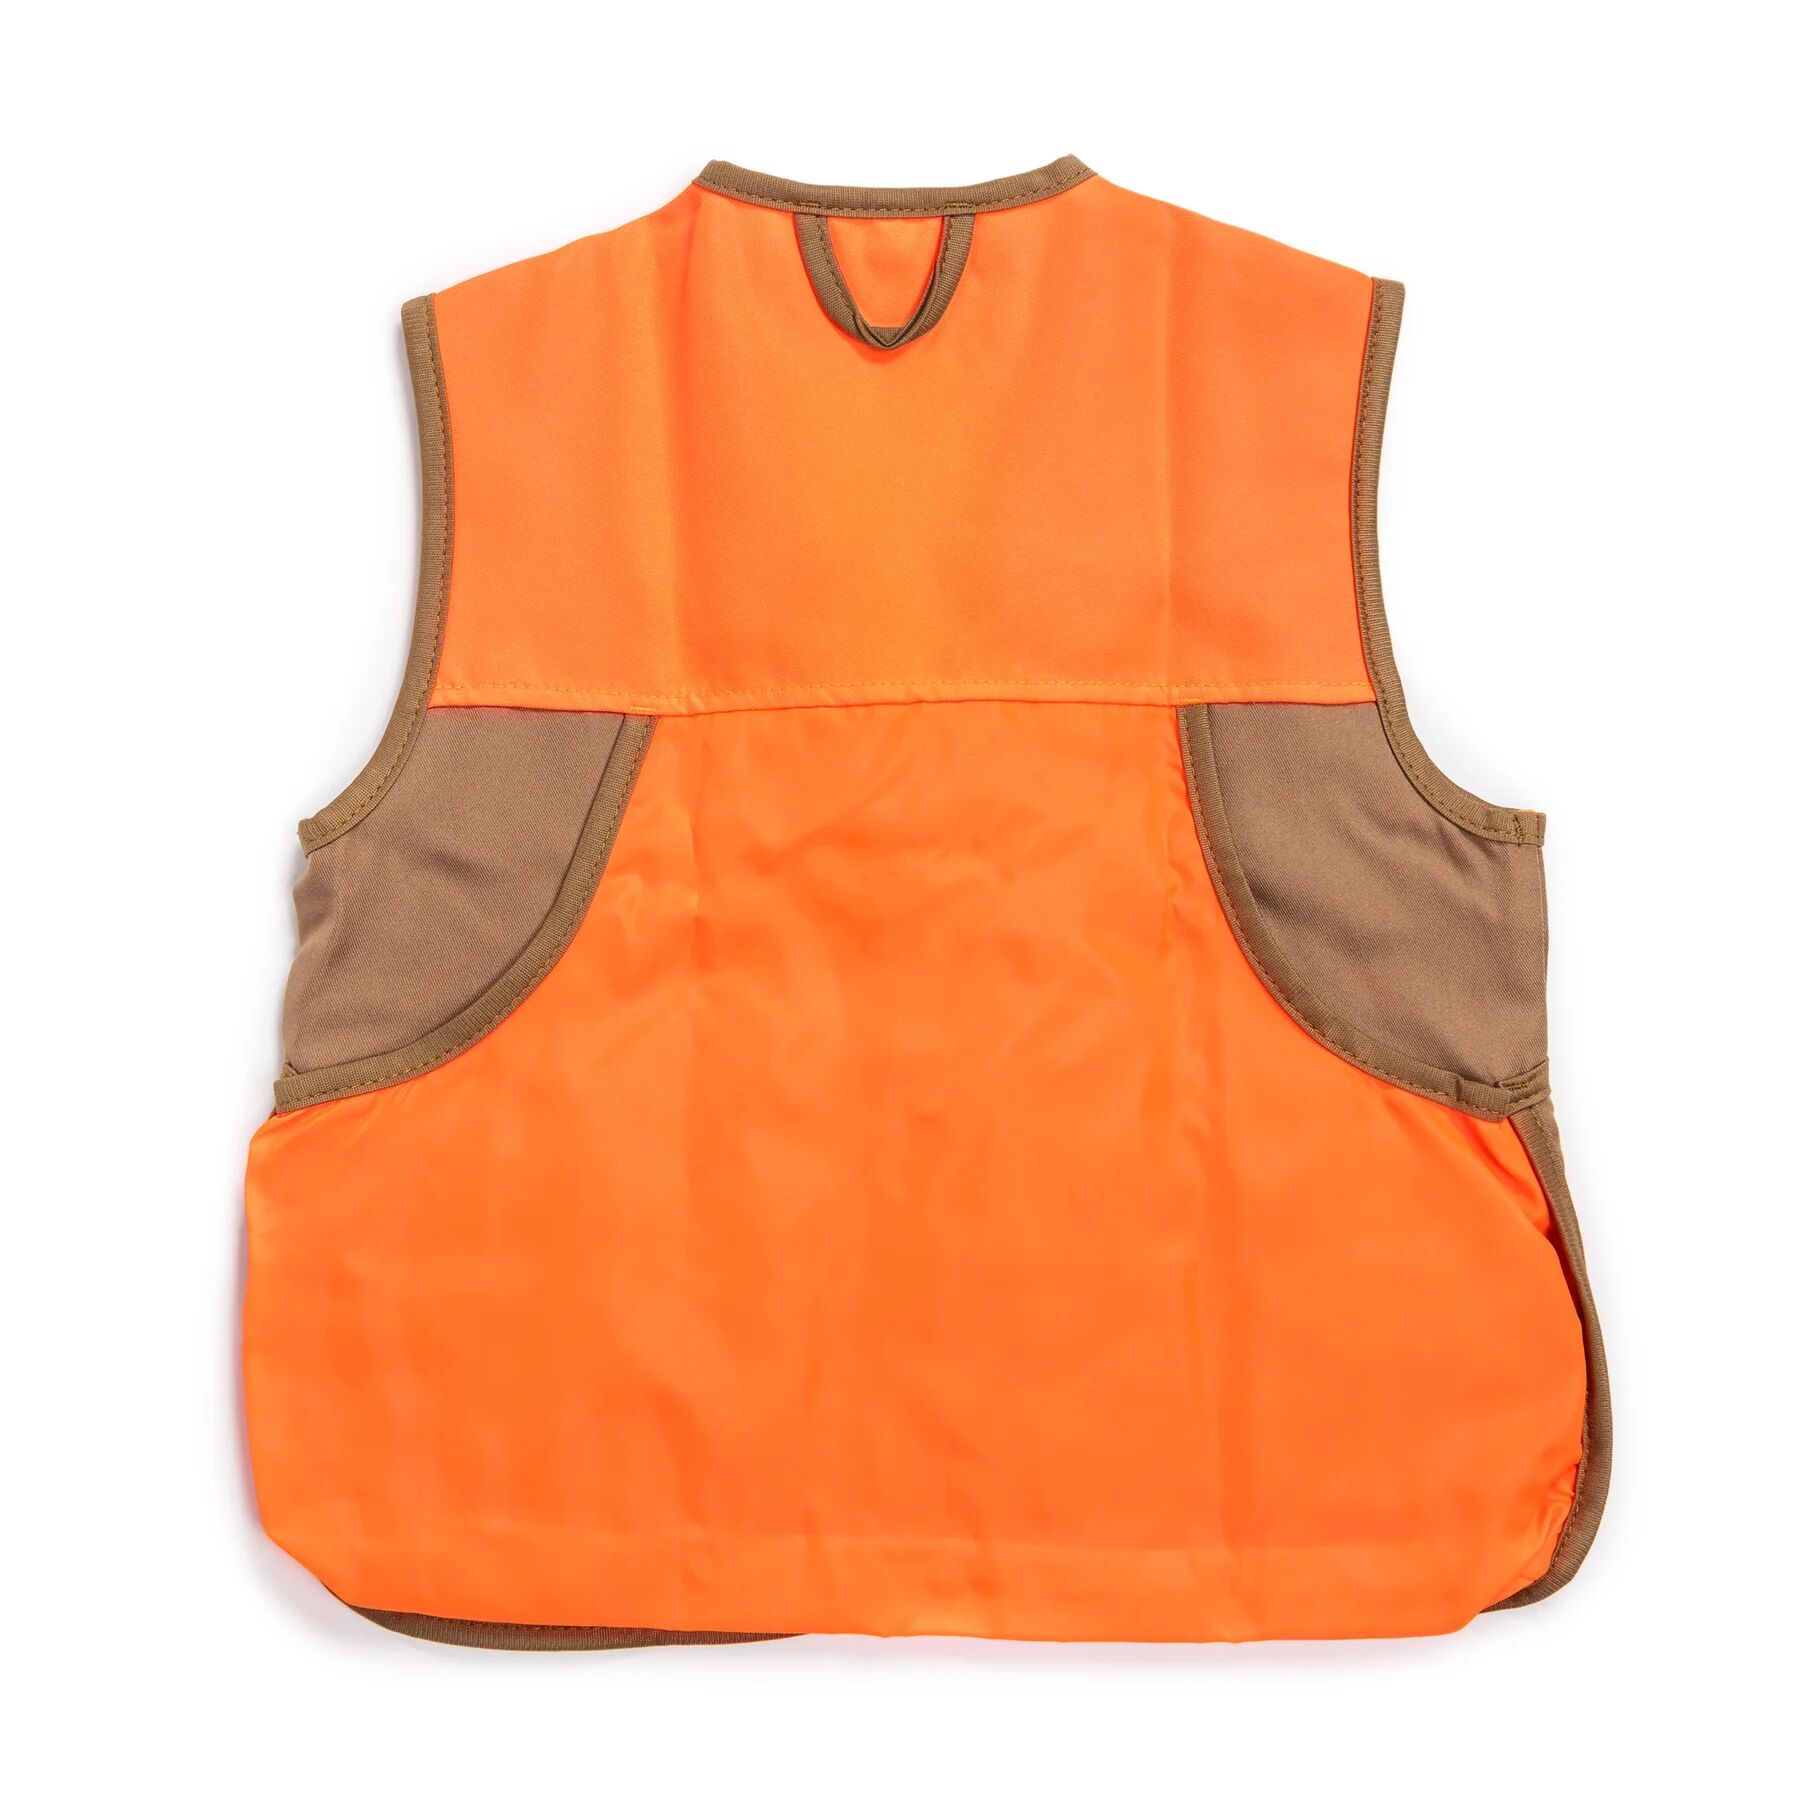 Men's Hunting Vest in Duck Brown/Blaze